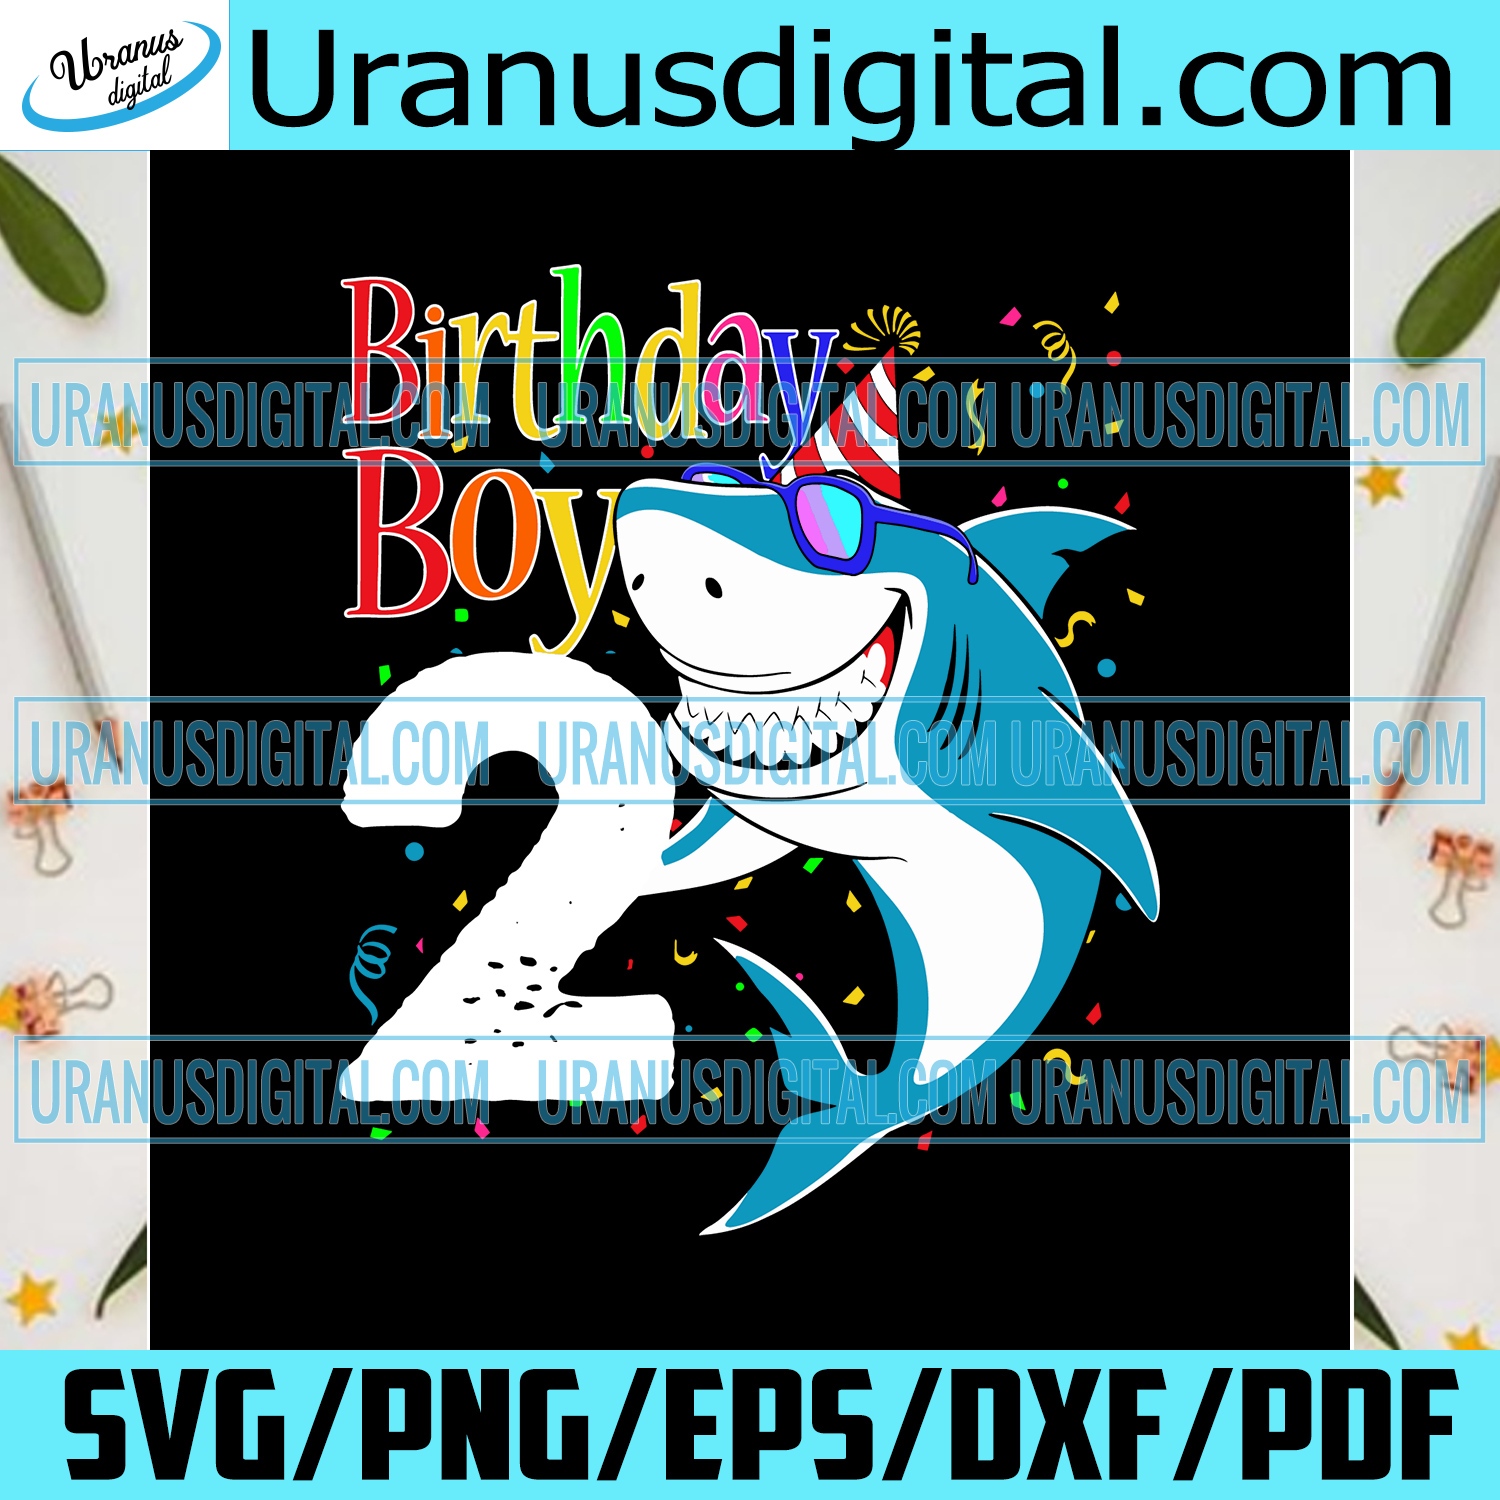 Download 2nd Birthday Boy Svg Birthday Svg Birthday Gift Birthday Boy Svg 2 Uranusdigital